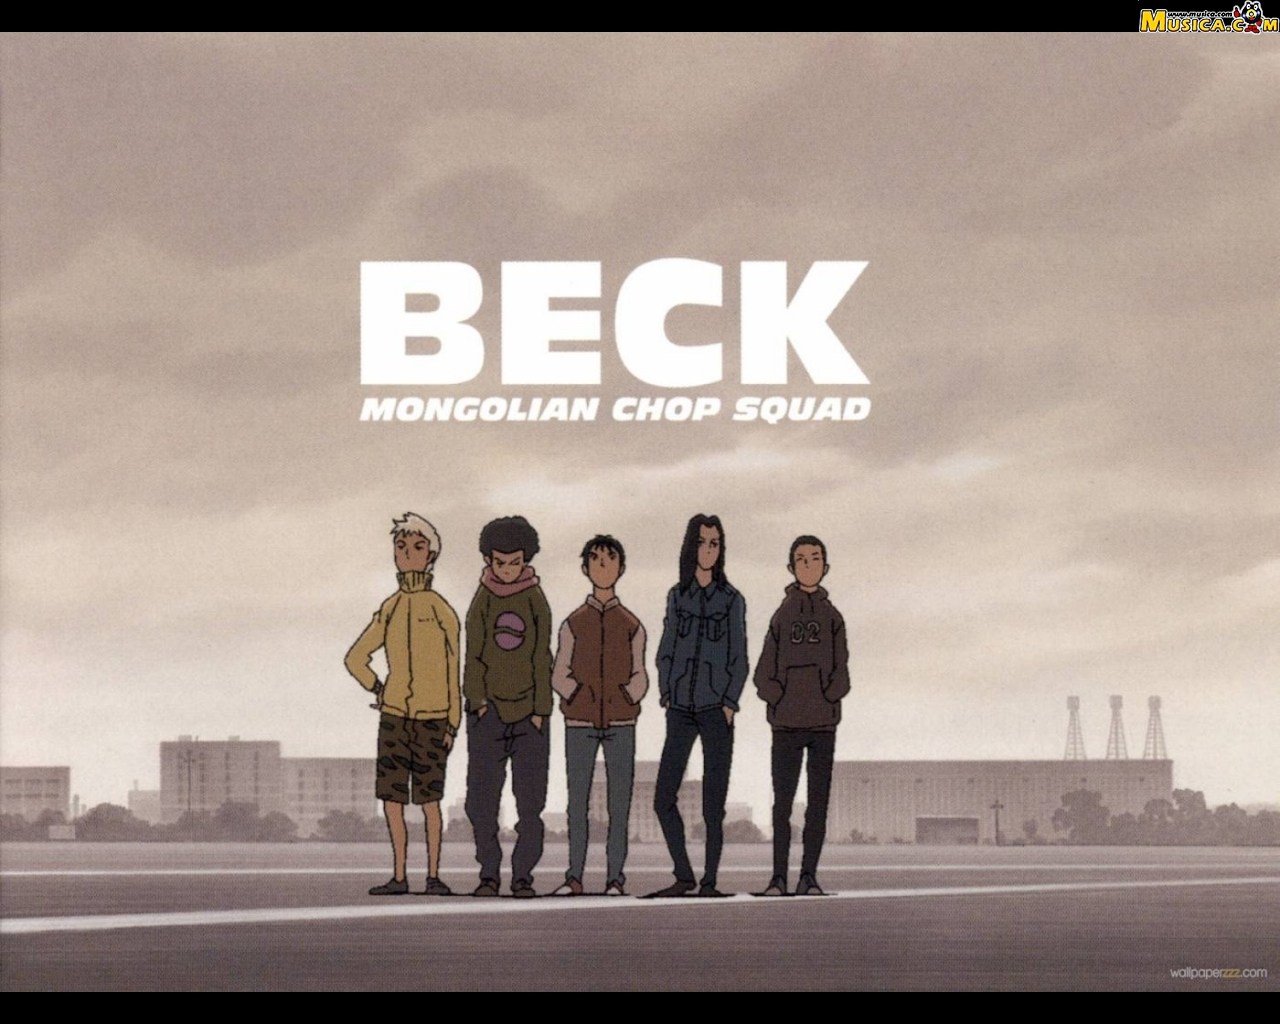 Fondo de pantalla de Beck Mongolian Chop Squad